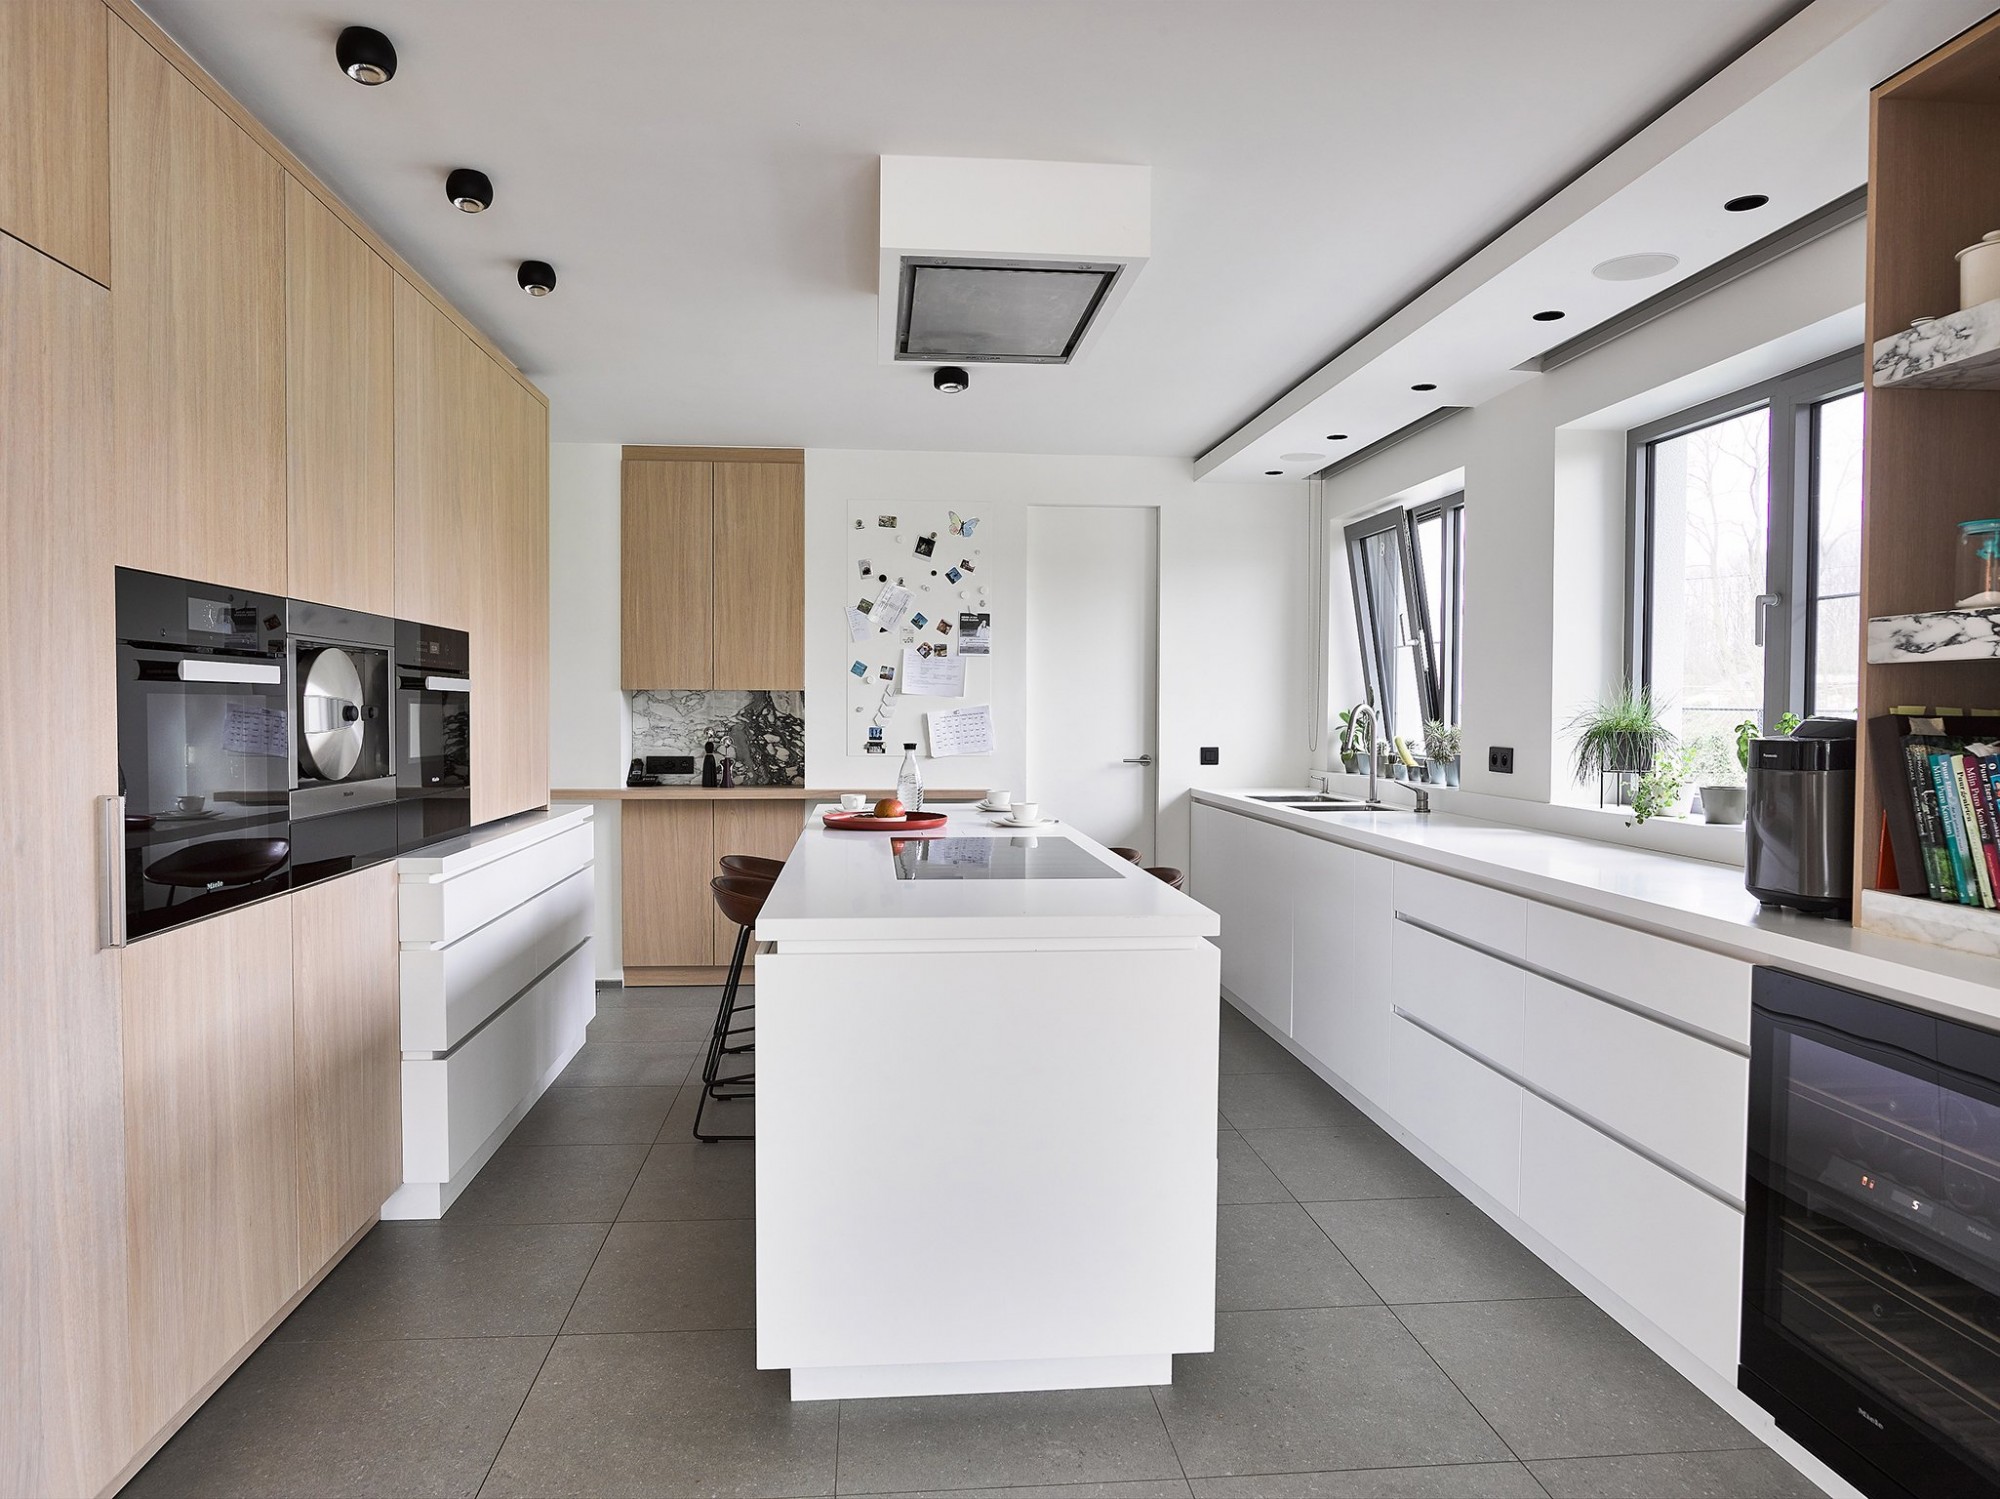 Afbeelding: Keuken interieur voor © totaal projecten Vergalle, fotografie foto Van Huffel